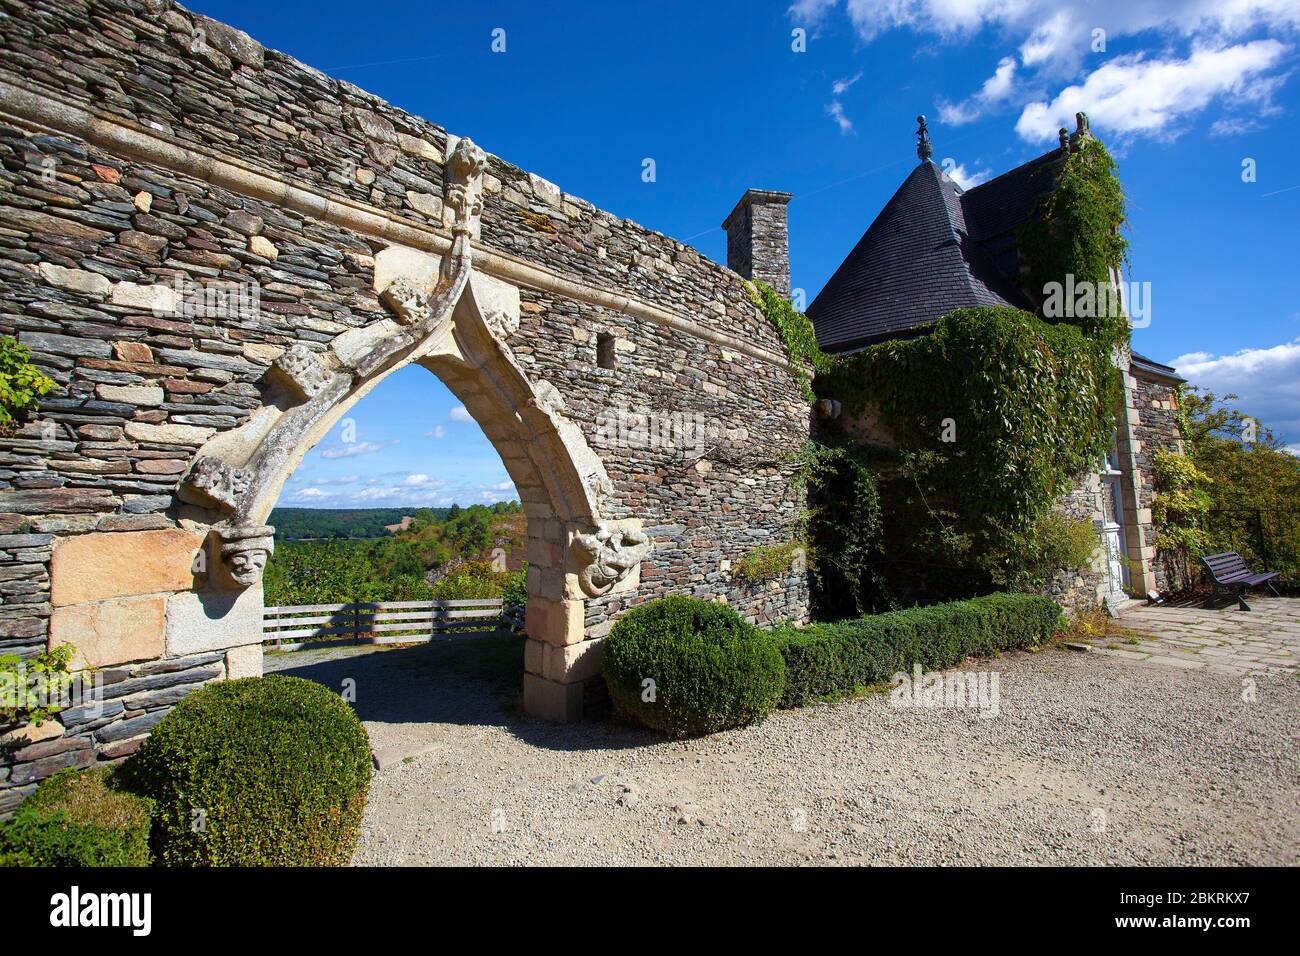 Frankreich, Morbihan, Rochefort en Terre, Blick auf die Sandsteine aus den Gärten des Schlosses von Rochefort en Terre, dem bevorzugten Dorf der Französisch 2016 Stockfoto